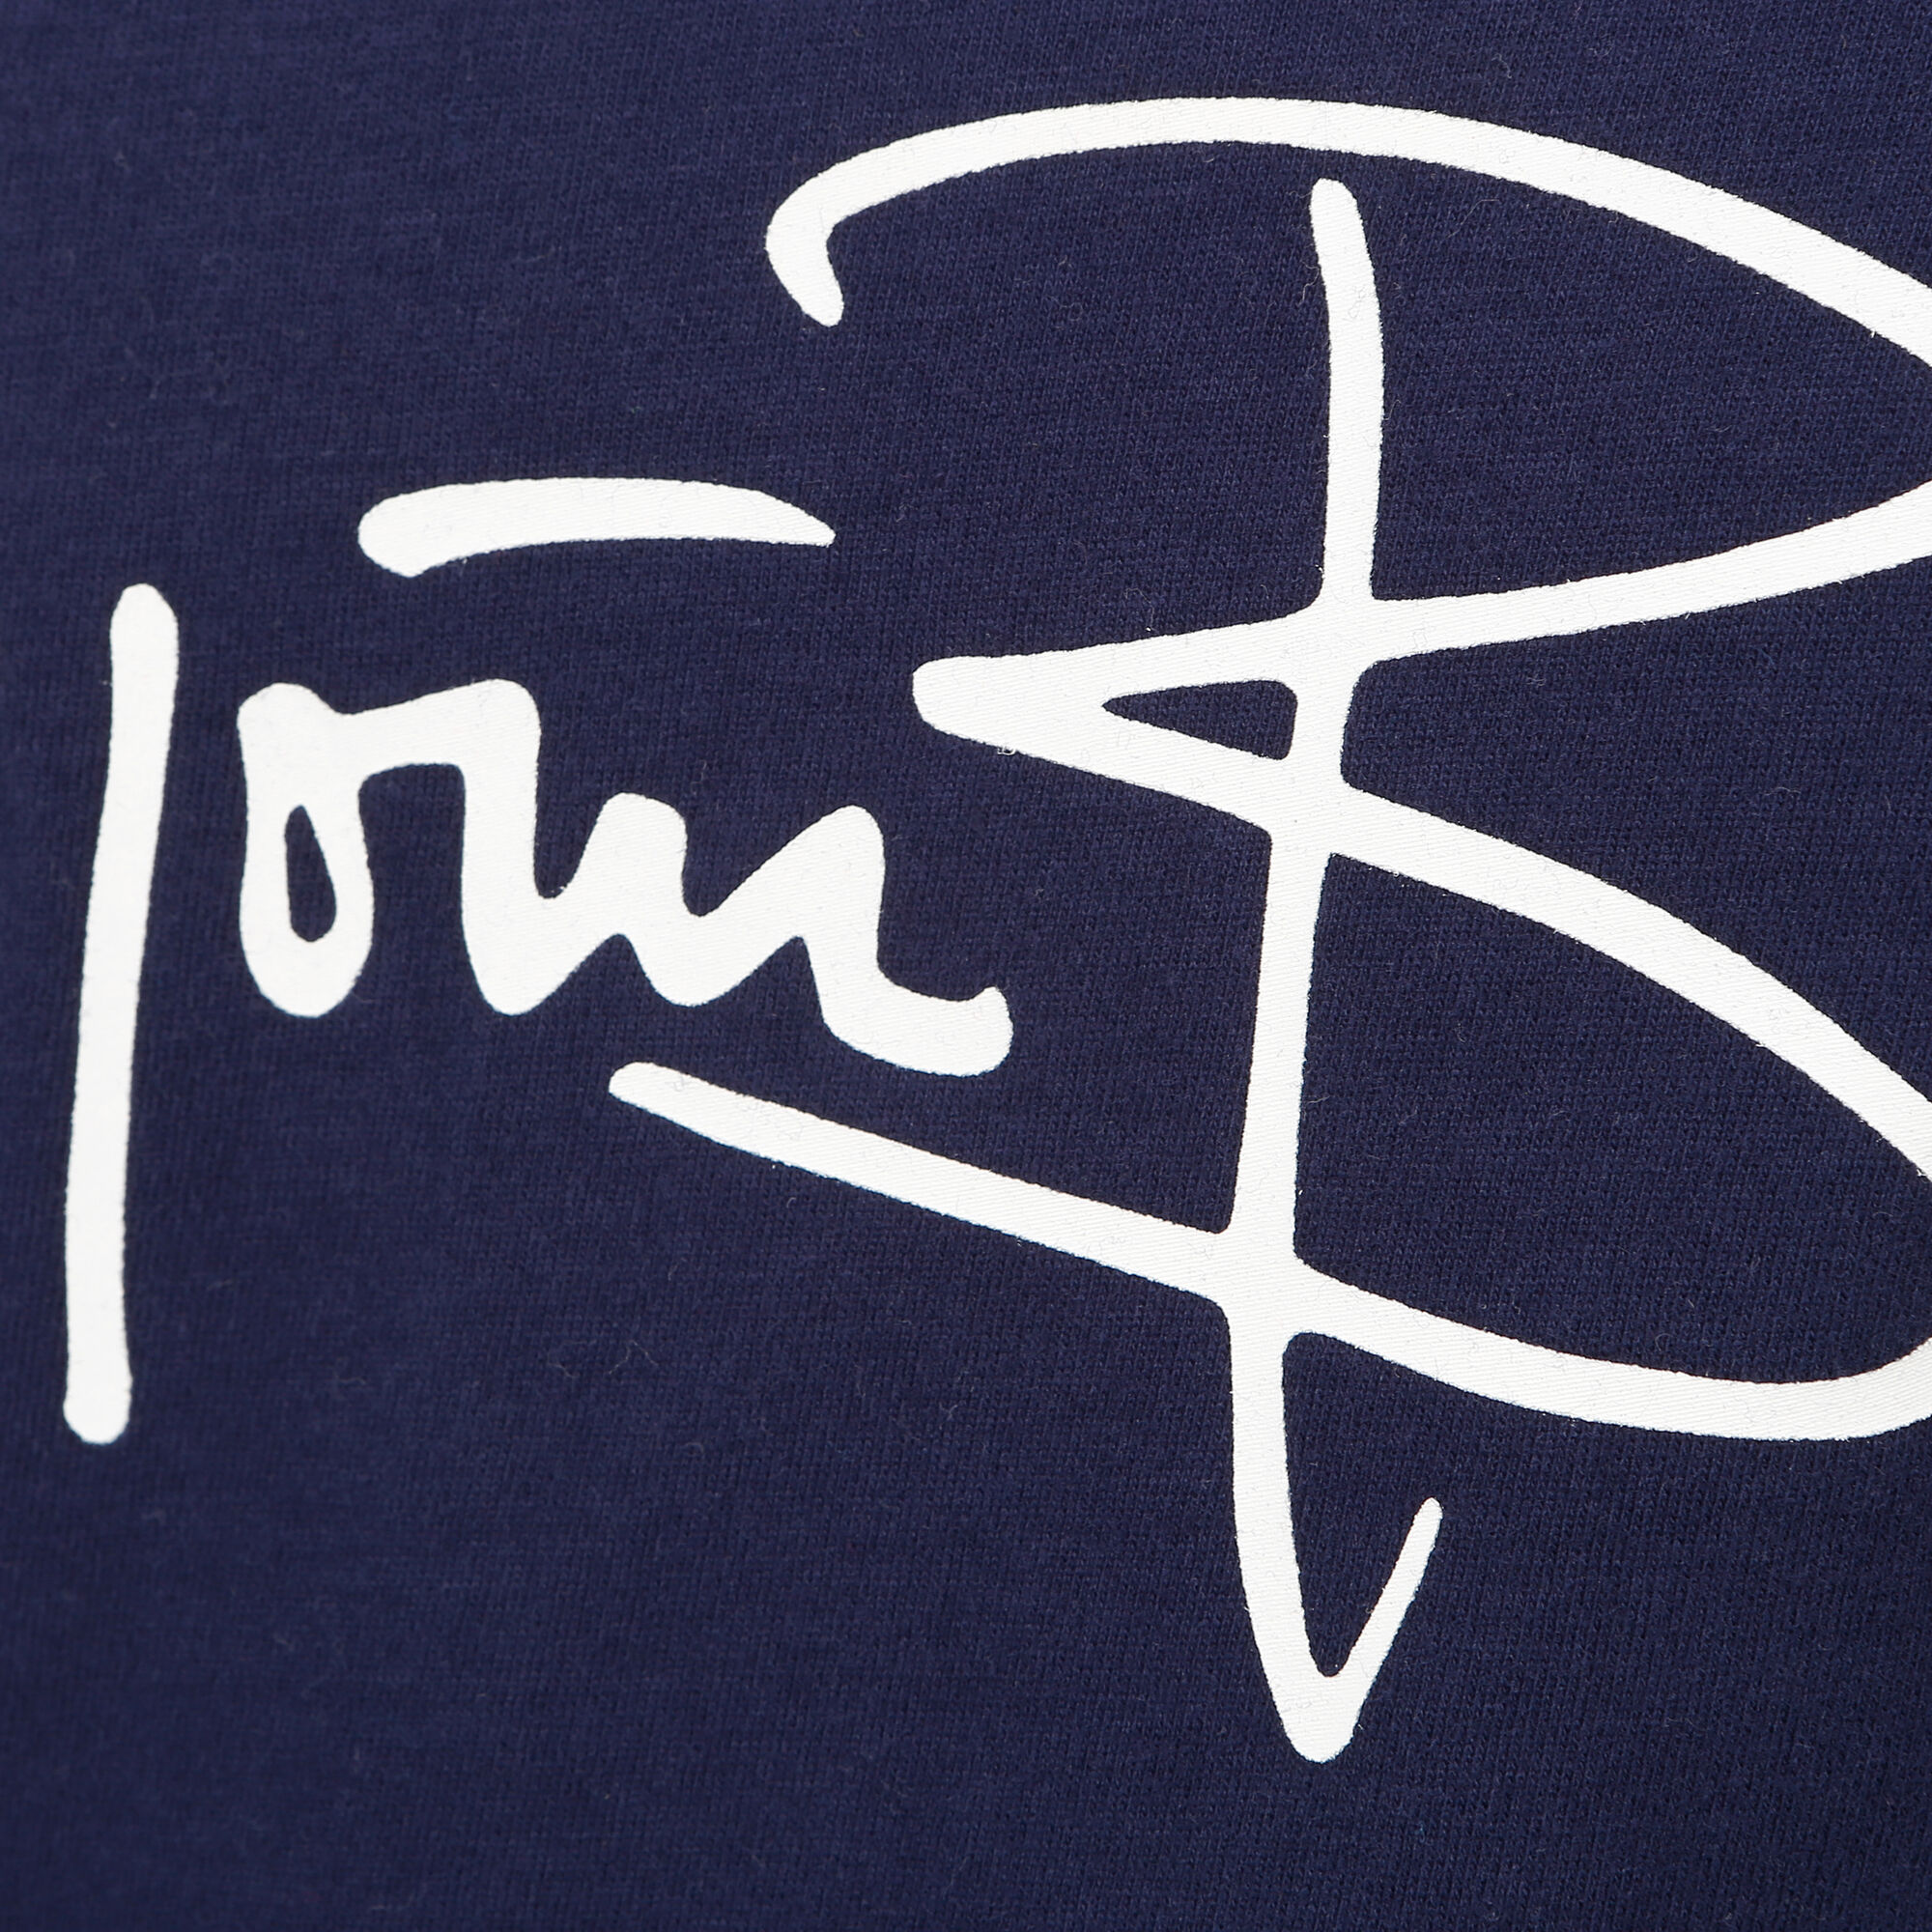 buy Björn Borg Signature Logo T-Shirt Men - Dark Blue, White online ...